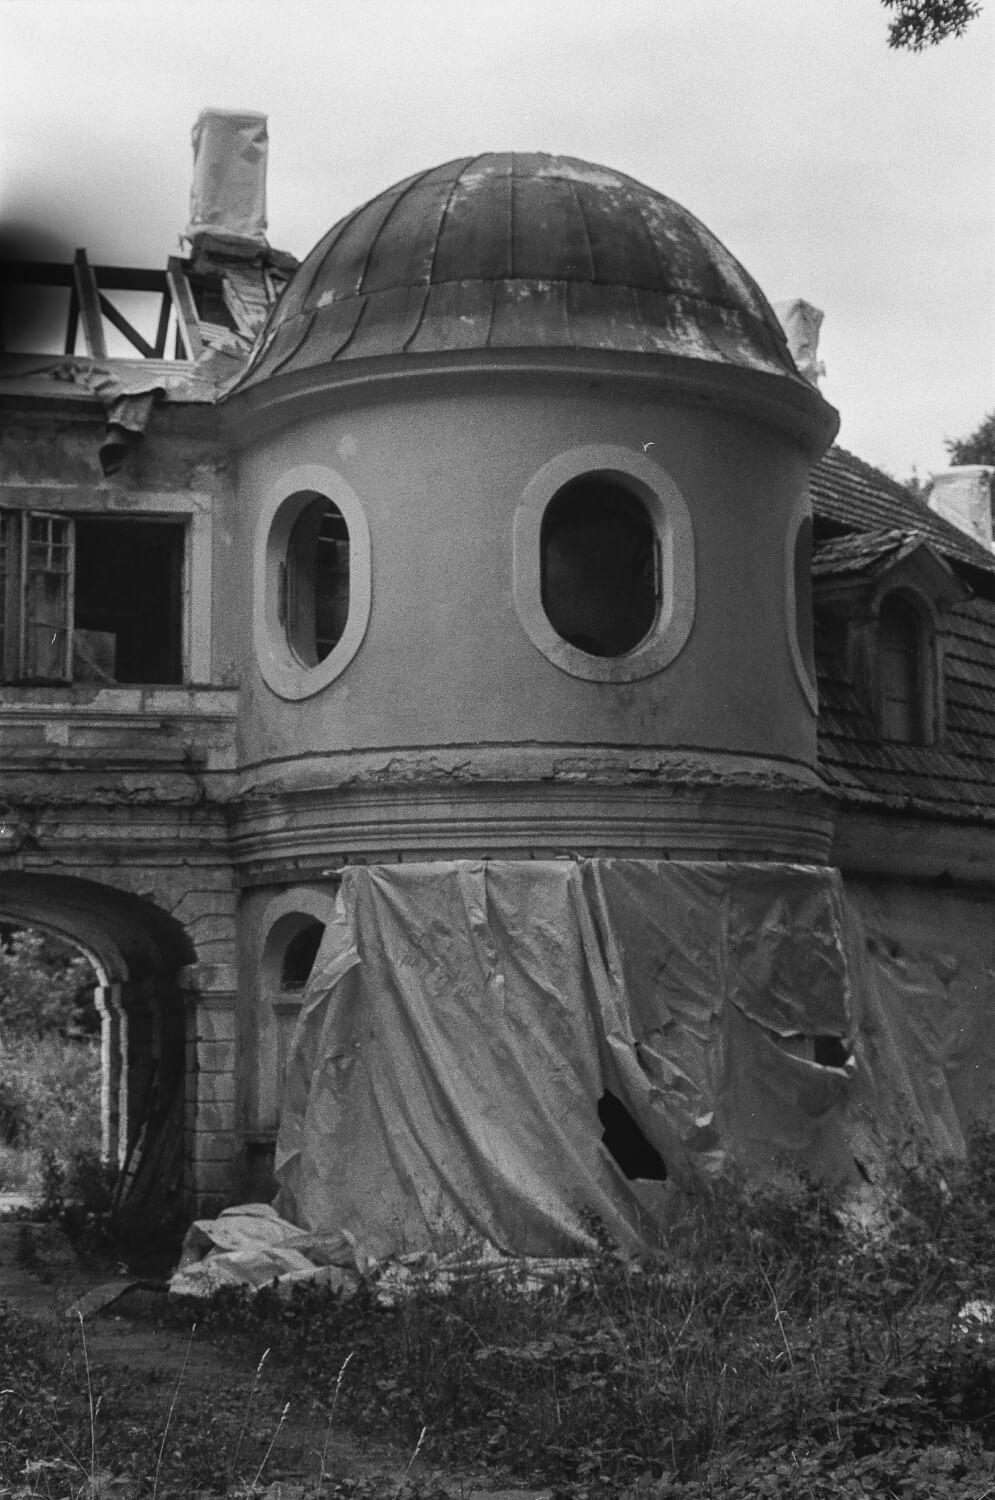 5 Cadres... Du Manoir letton de Kaucminde sur film Lomography Berlin 400 Cinema (Nikon FE2 et Nikon 55mm f/1.2 AI) - par Felix I Flores Rodriguez